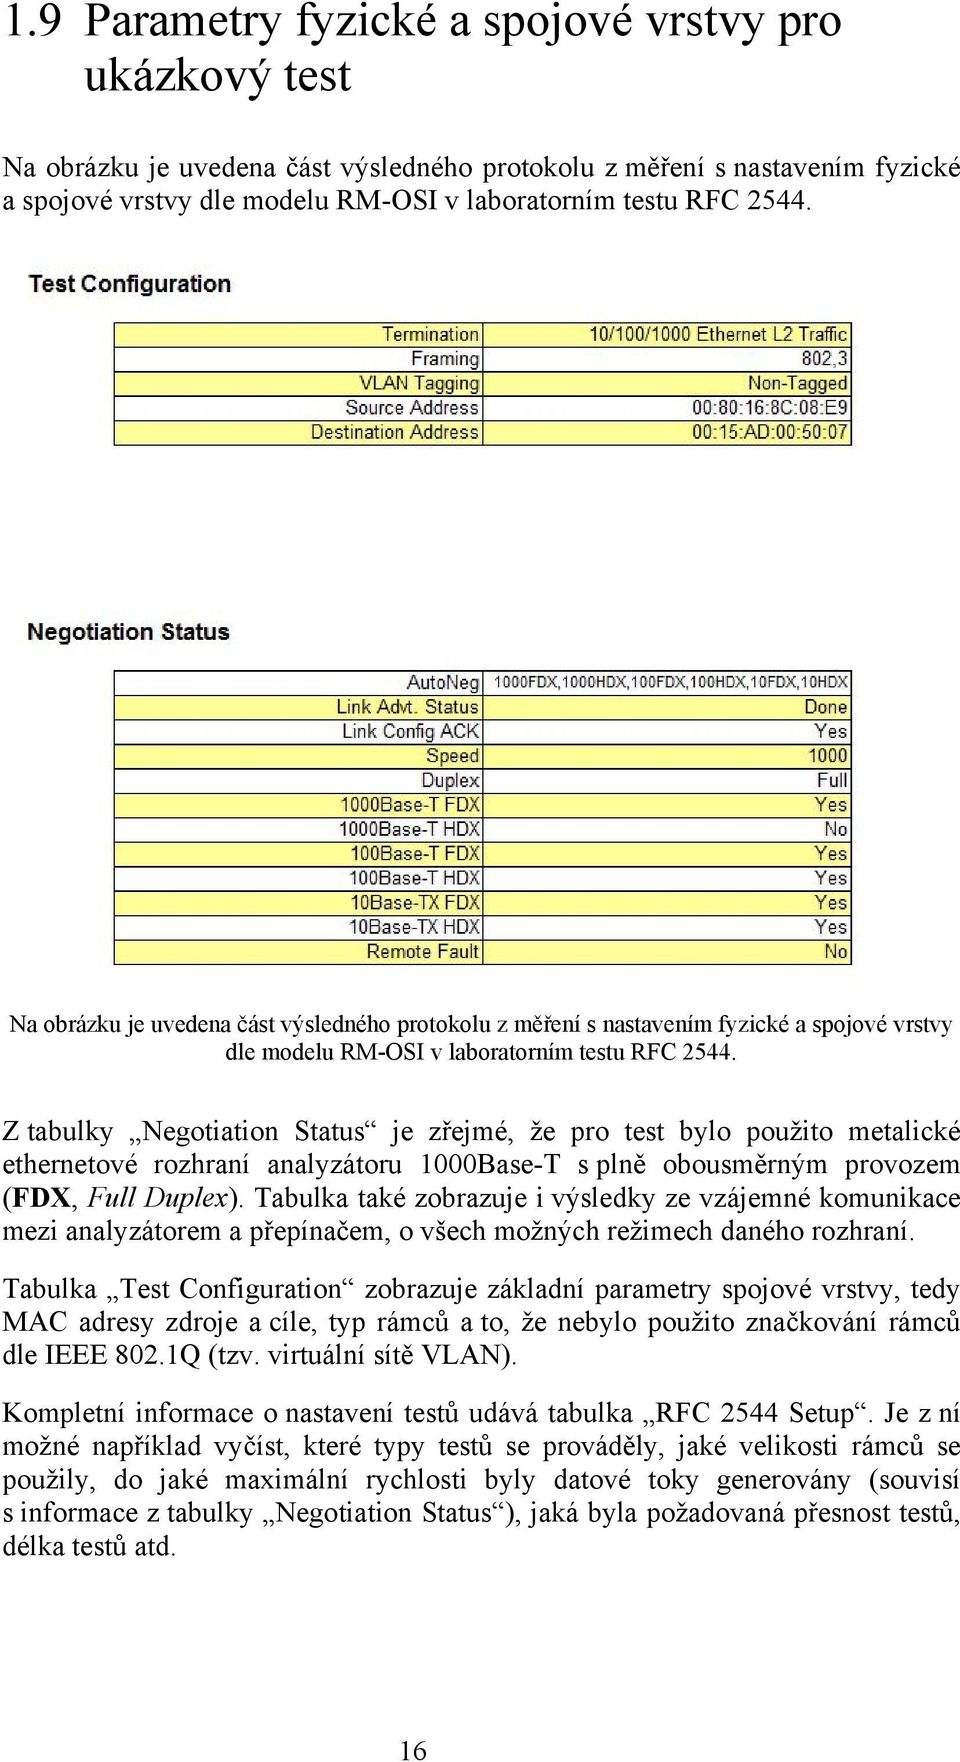 Z tabulky Negotiation Status je zřejmé, že pro test bylo použito metalické ethernetové rozhraní analyzátoru 1000Base-T s plně obousměrným provozem (FDX, Full Duplex).